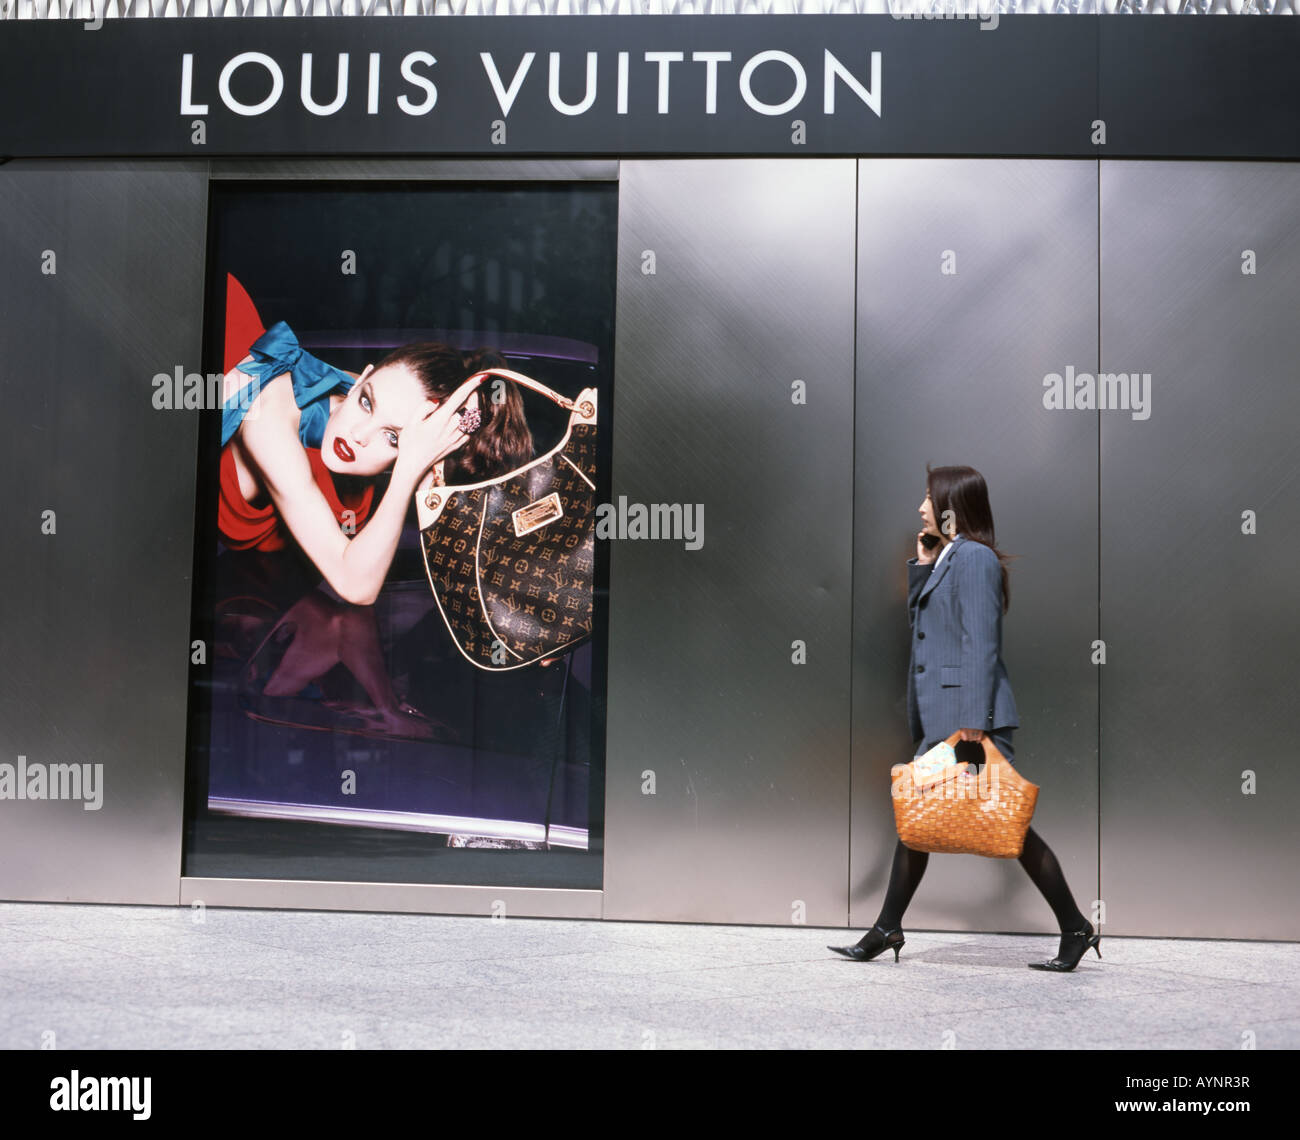 A woman walks pass a Louis Vuitton advertisement in a shopping